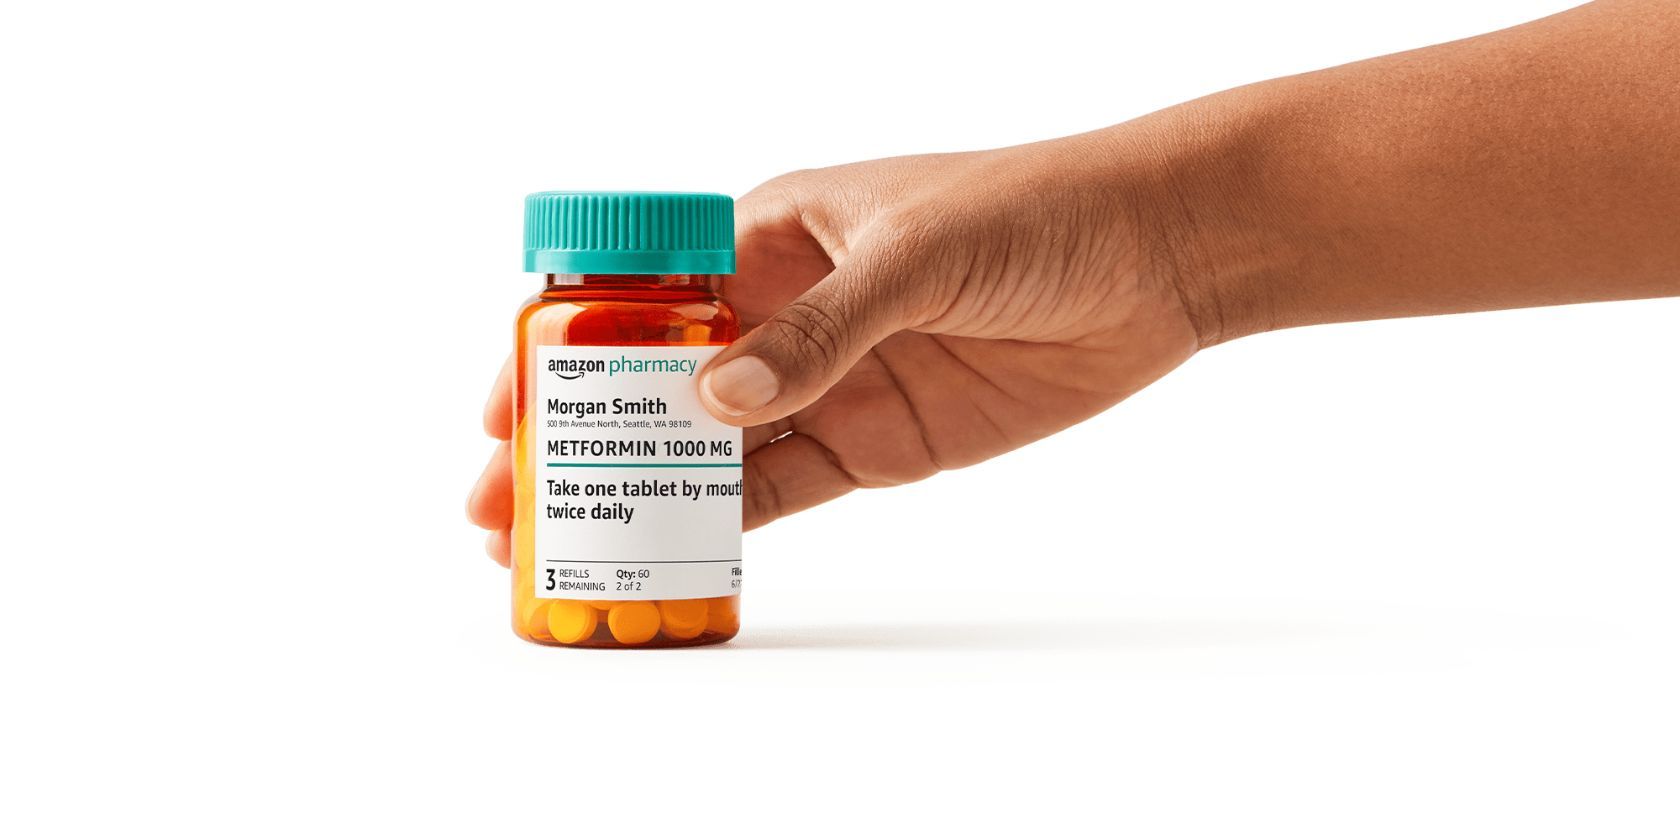 Medication bottle from Amazon Pharmacy